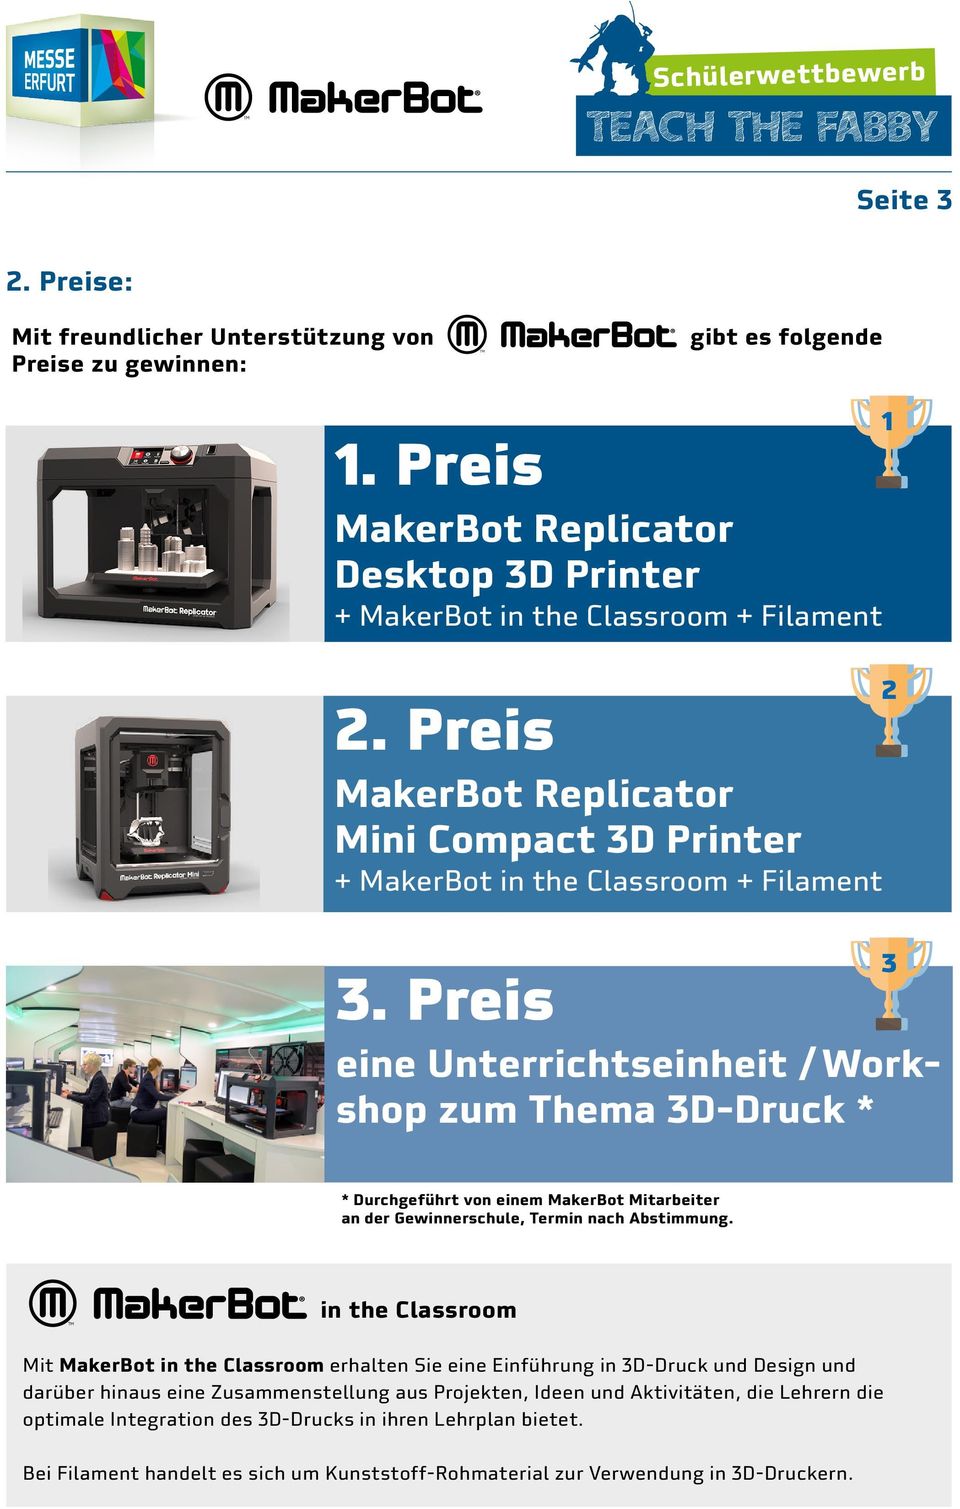 Preis eine Unterrichtseinheit / Workshop zum Thema 3D-Druck * 1 2 3 * Durchgeführt von einem MakerBot Mitarbeiter an der Gewinnerschule, Termin nach Abstimmung.